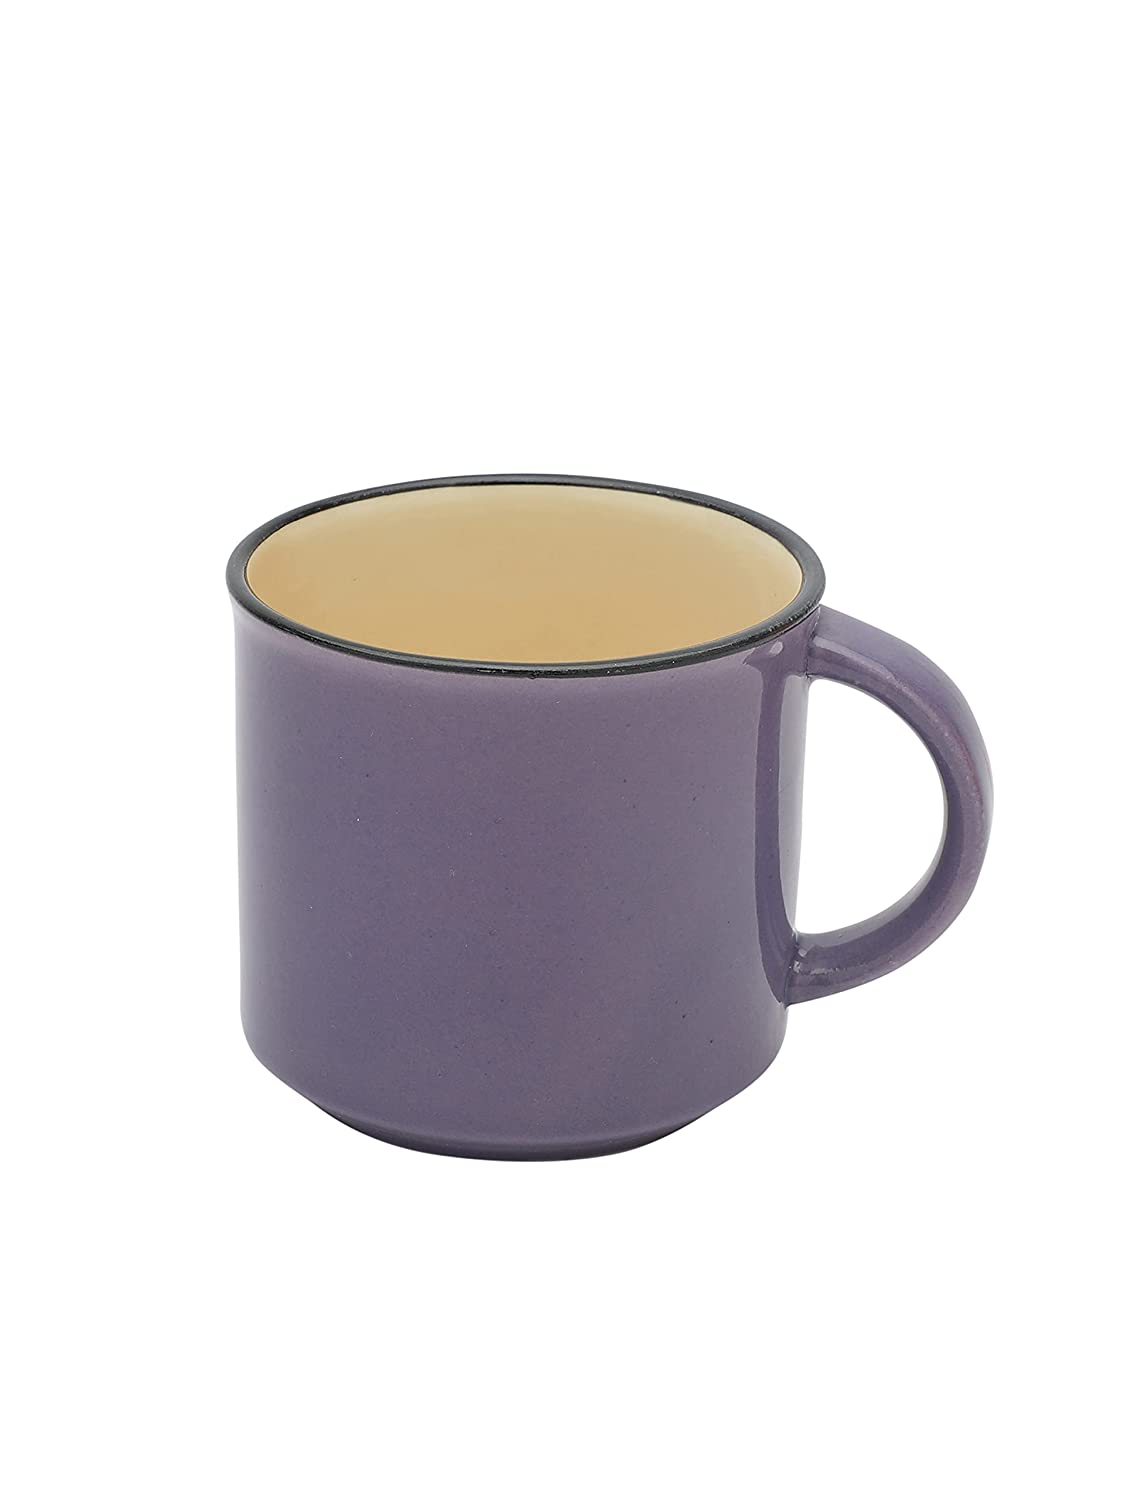 JCPL Marc Coffee Mug/ Tea Cup Medium, Set of 6